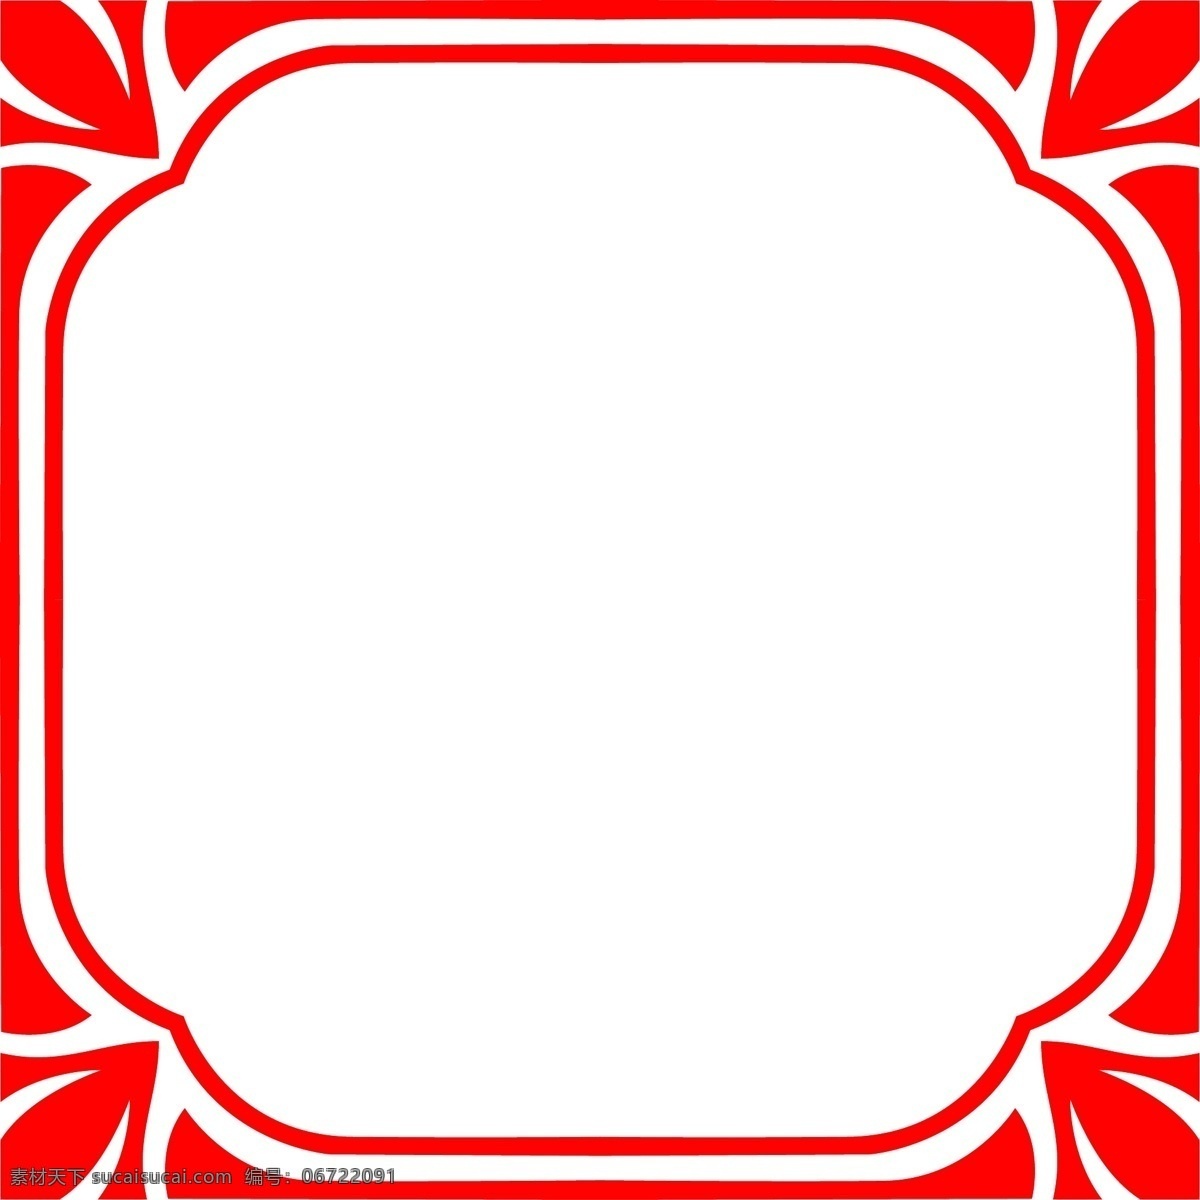 现代 风格 红色 正方形 矢量 海报 边框 透明 彩色 装饰 平面设计 原创 透明底 免抠 节日 海报装饰 清新 通用 标题框 海报边框 现代风格